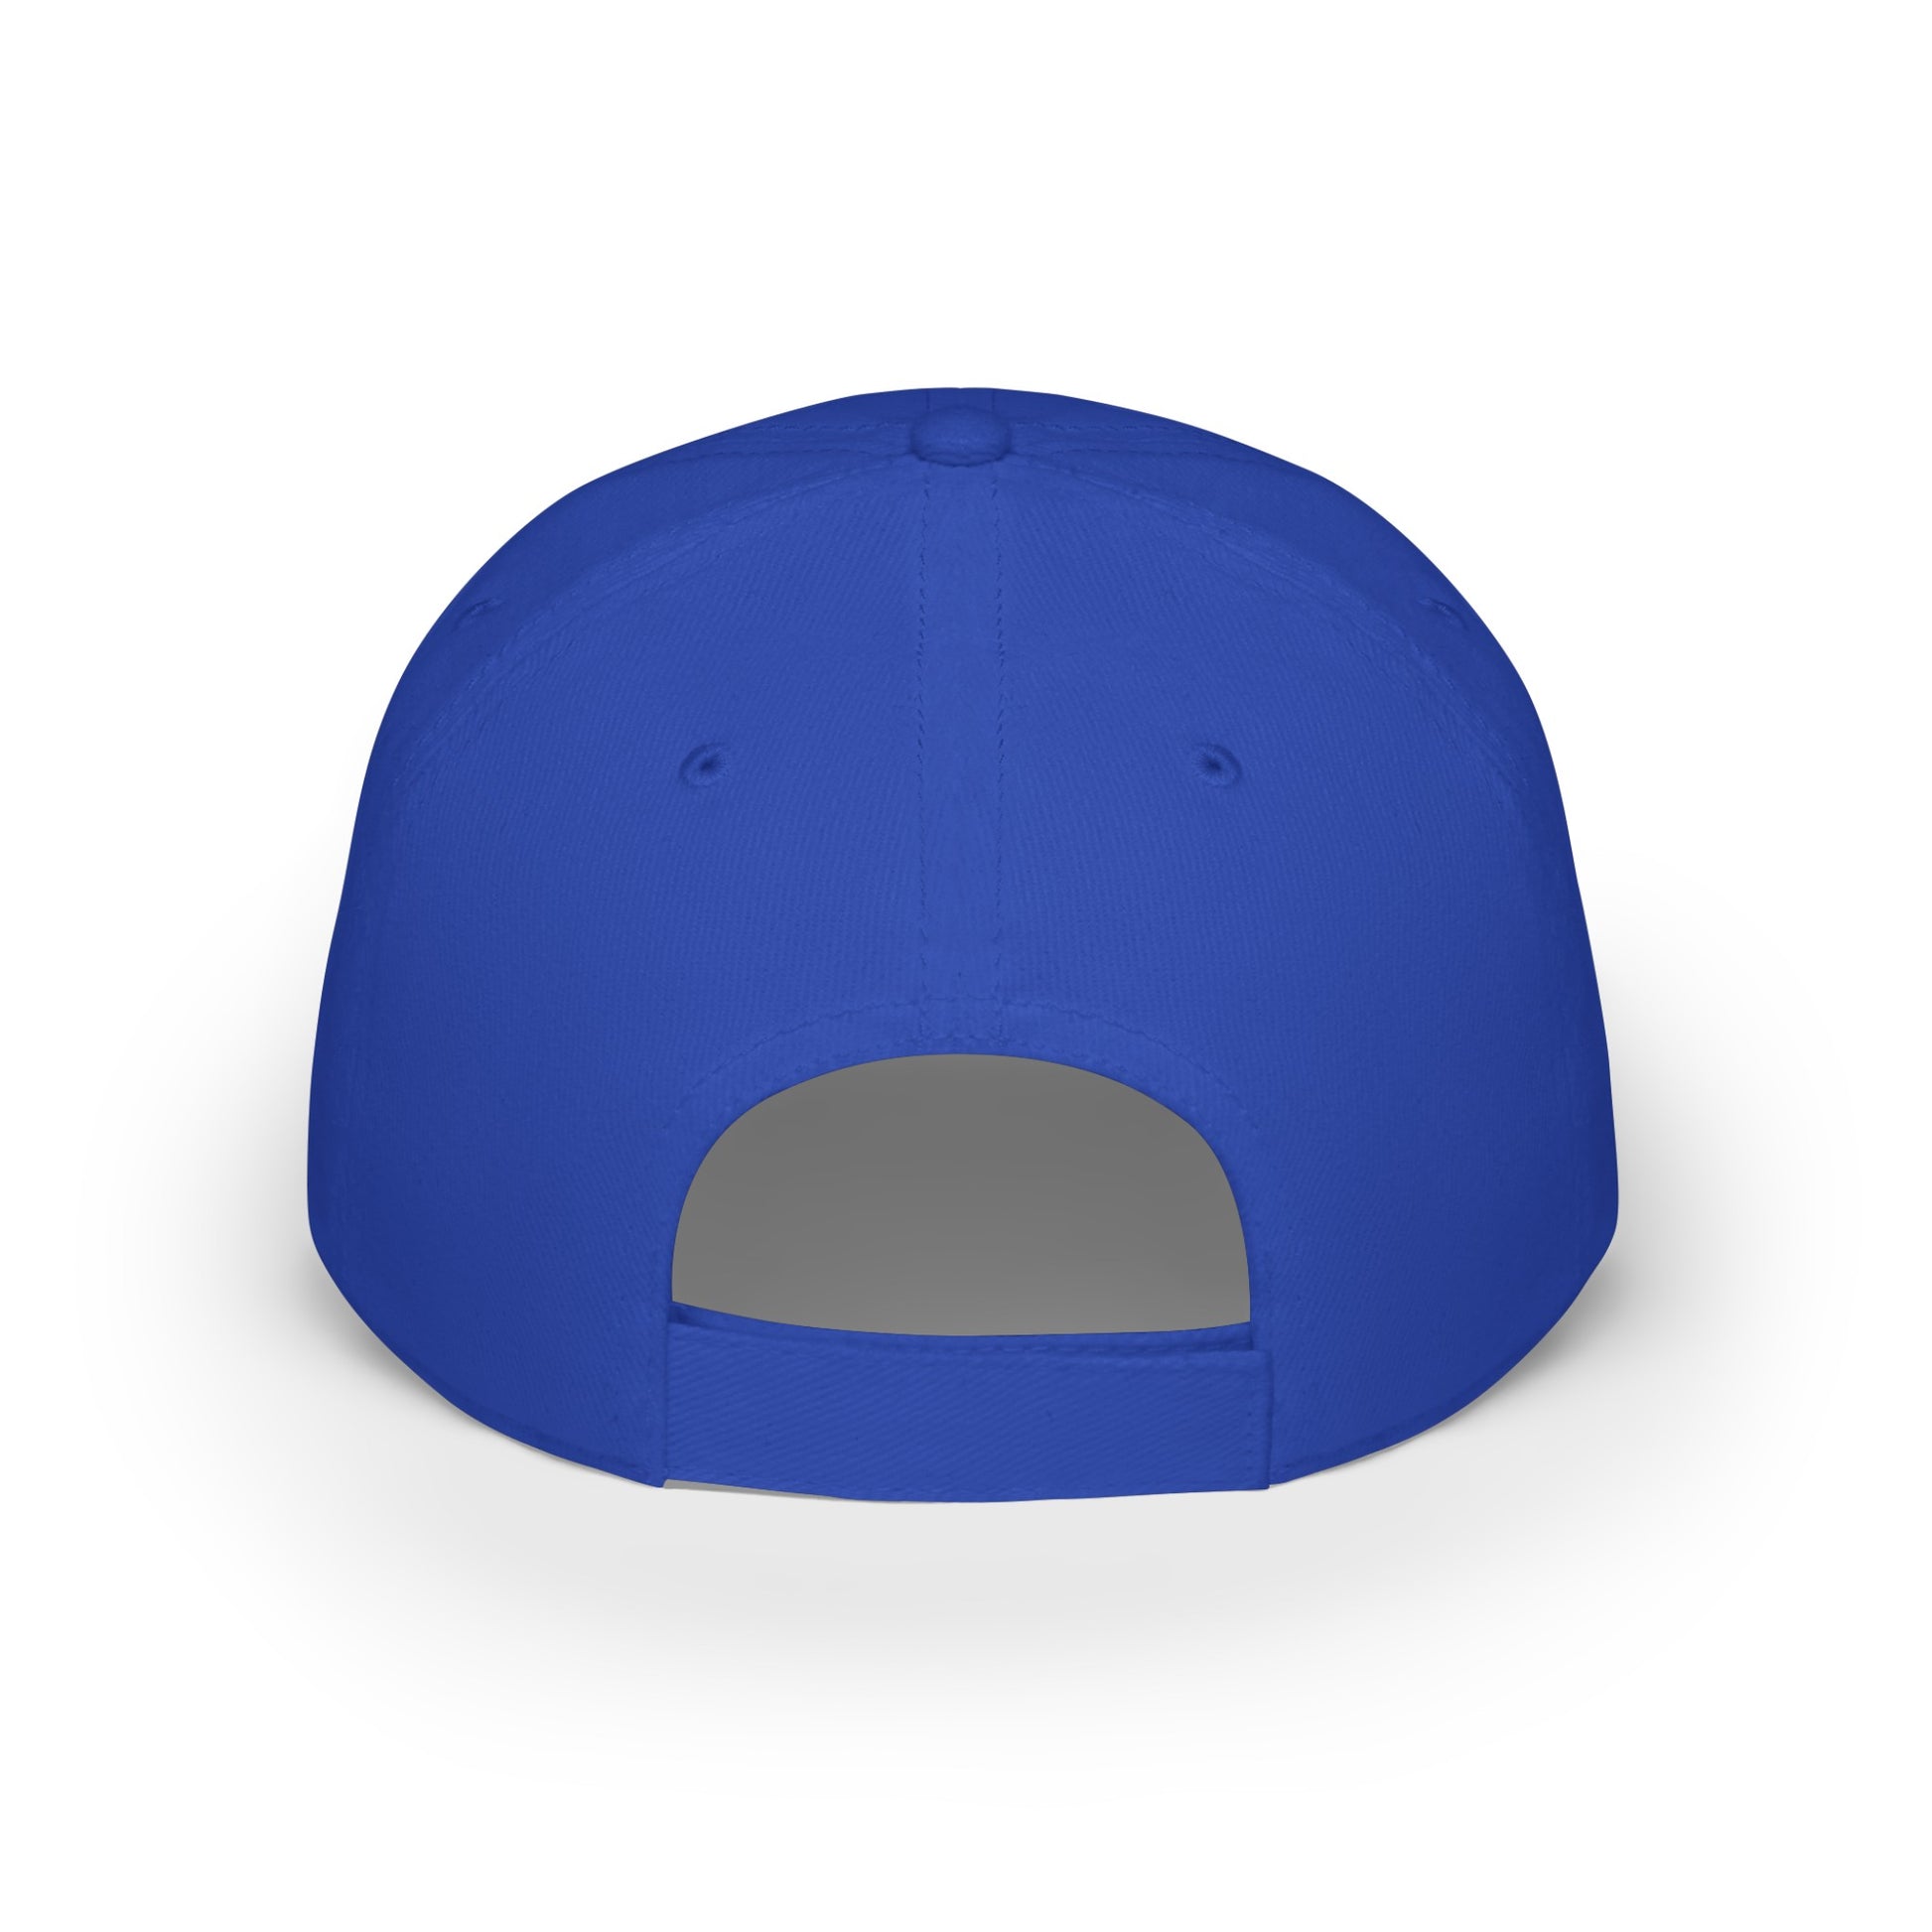 MDBTDJ#WRGC - Low Profile Baseball Cap Tattooed Dj's Limited Edition, Hats, Tattooed Djs Shop